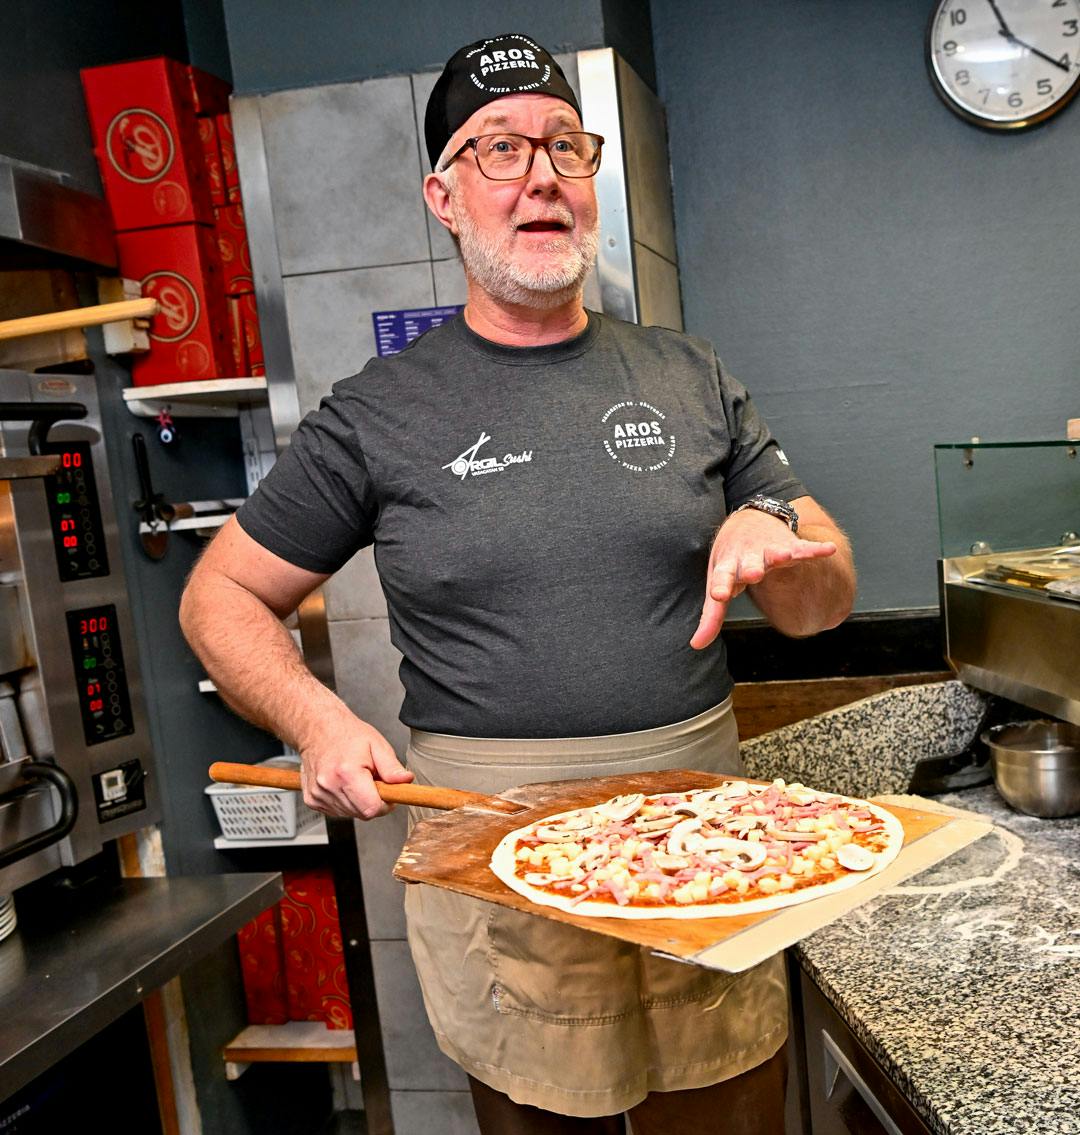 Arbetsmarknads- och integrationsminister Johan Pehrson bakar pizza.